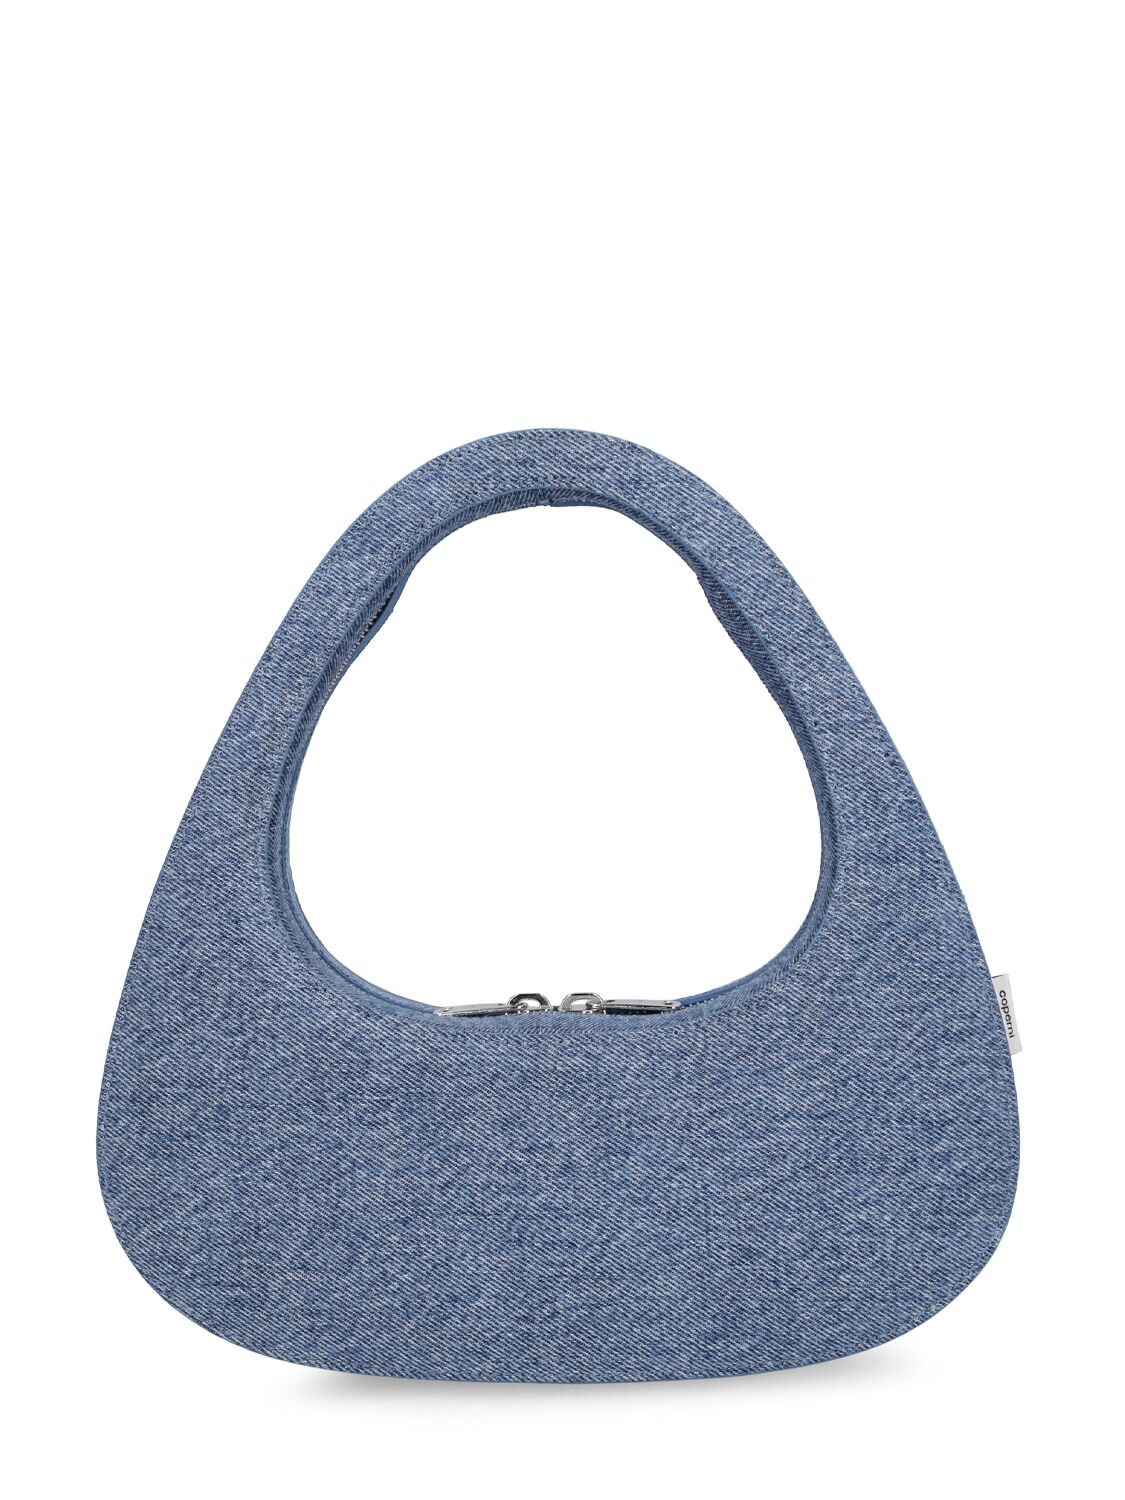 Image of Swipe Denim Top Handle Bag